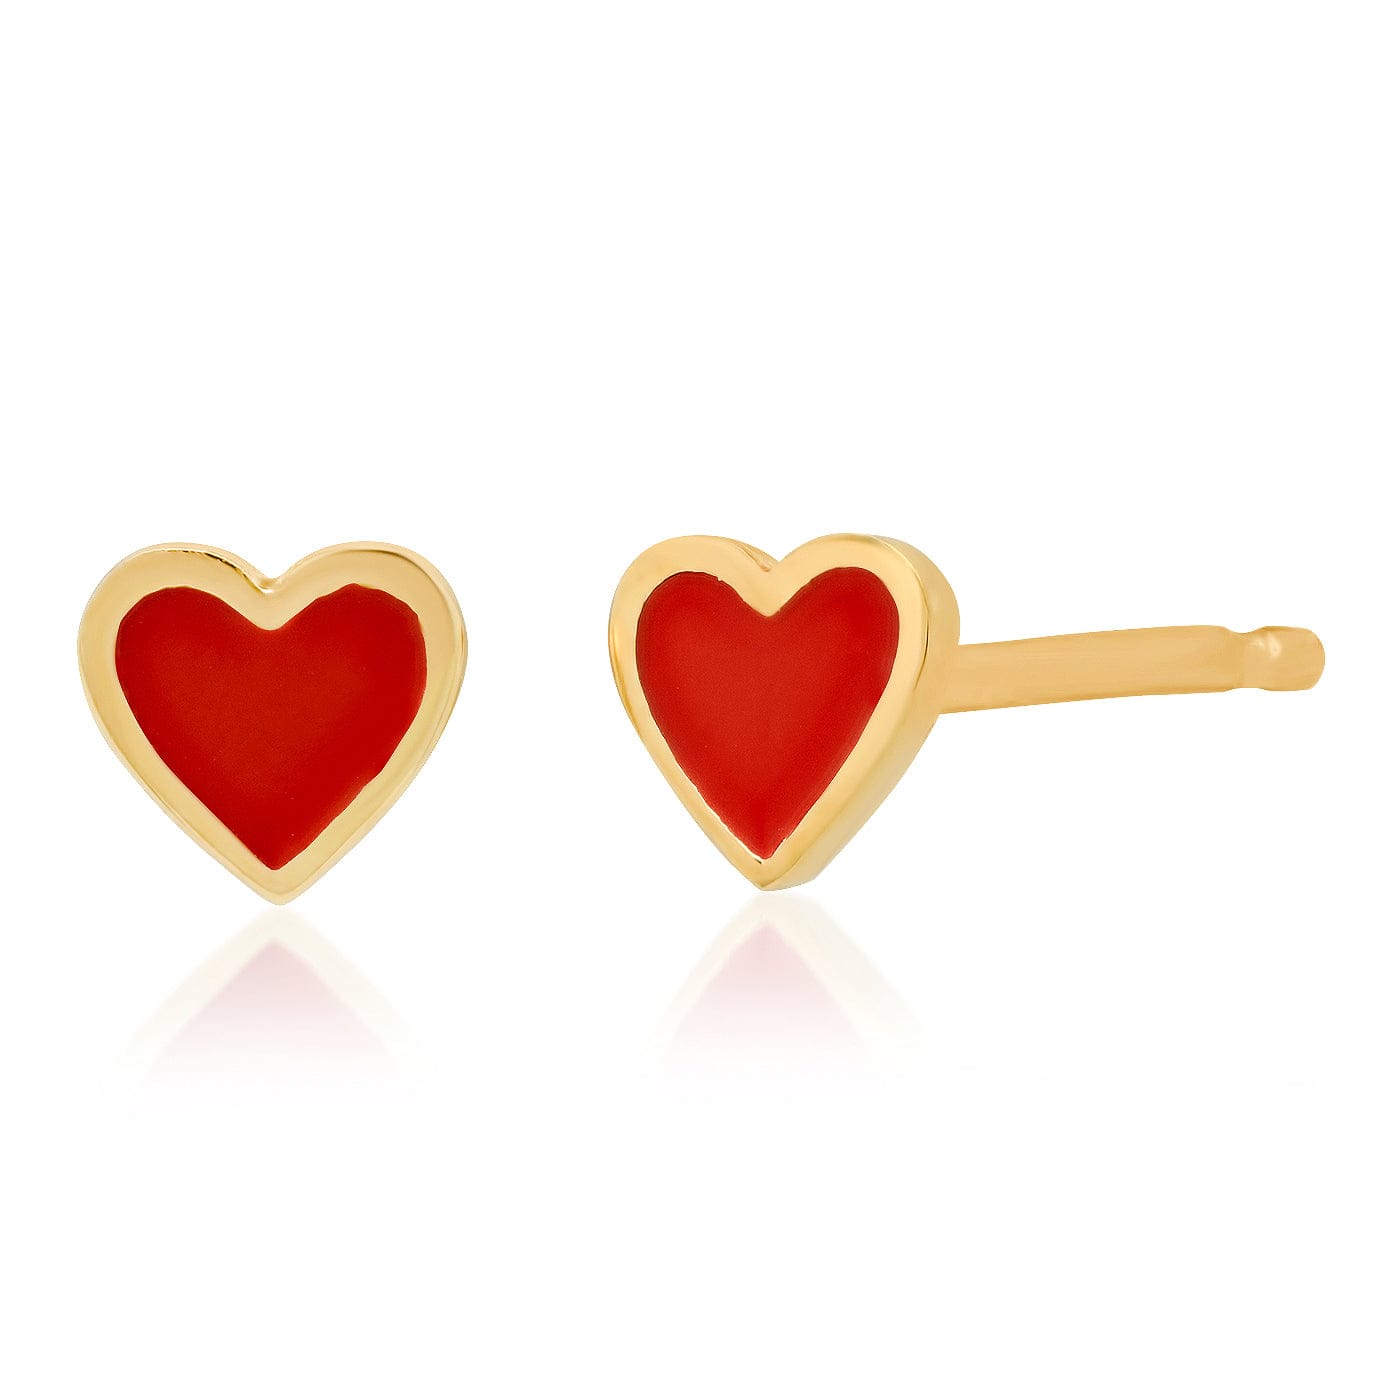 TAI JEWELRY Earrings Red Heart Stud with Enamel